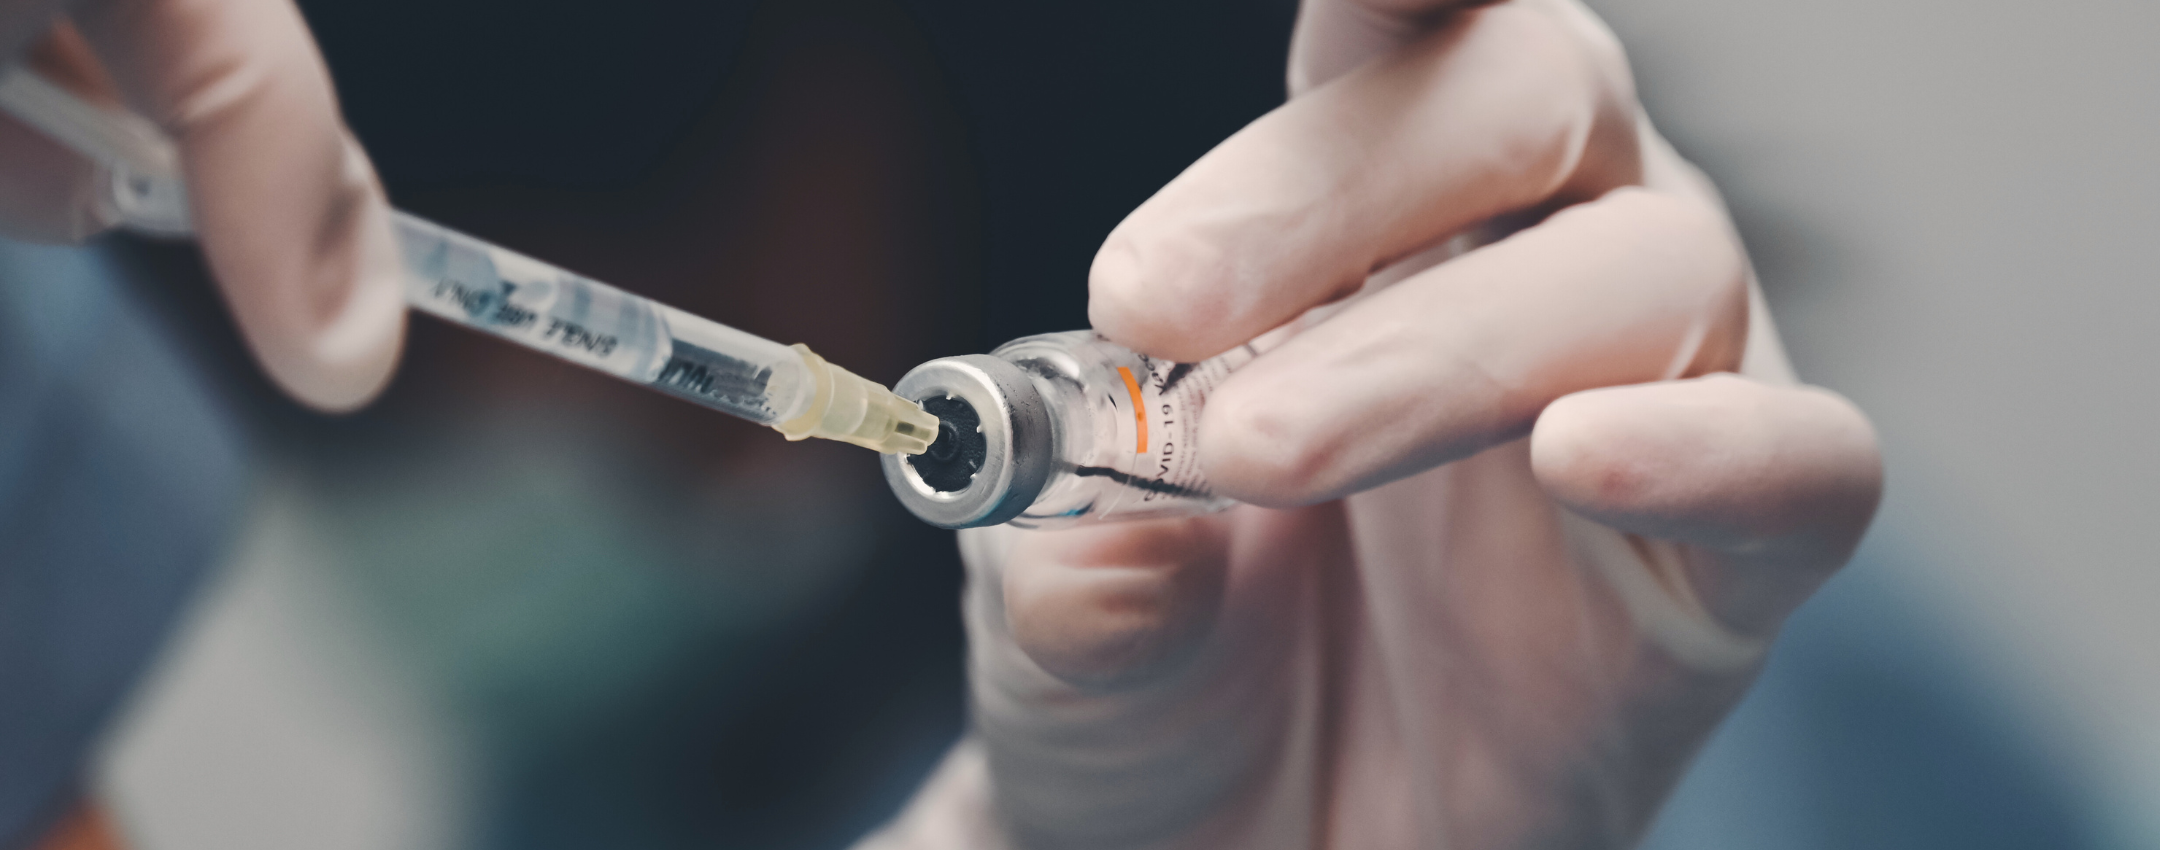 Como aplicar injeção intracavernosa? Confira o guia completo